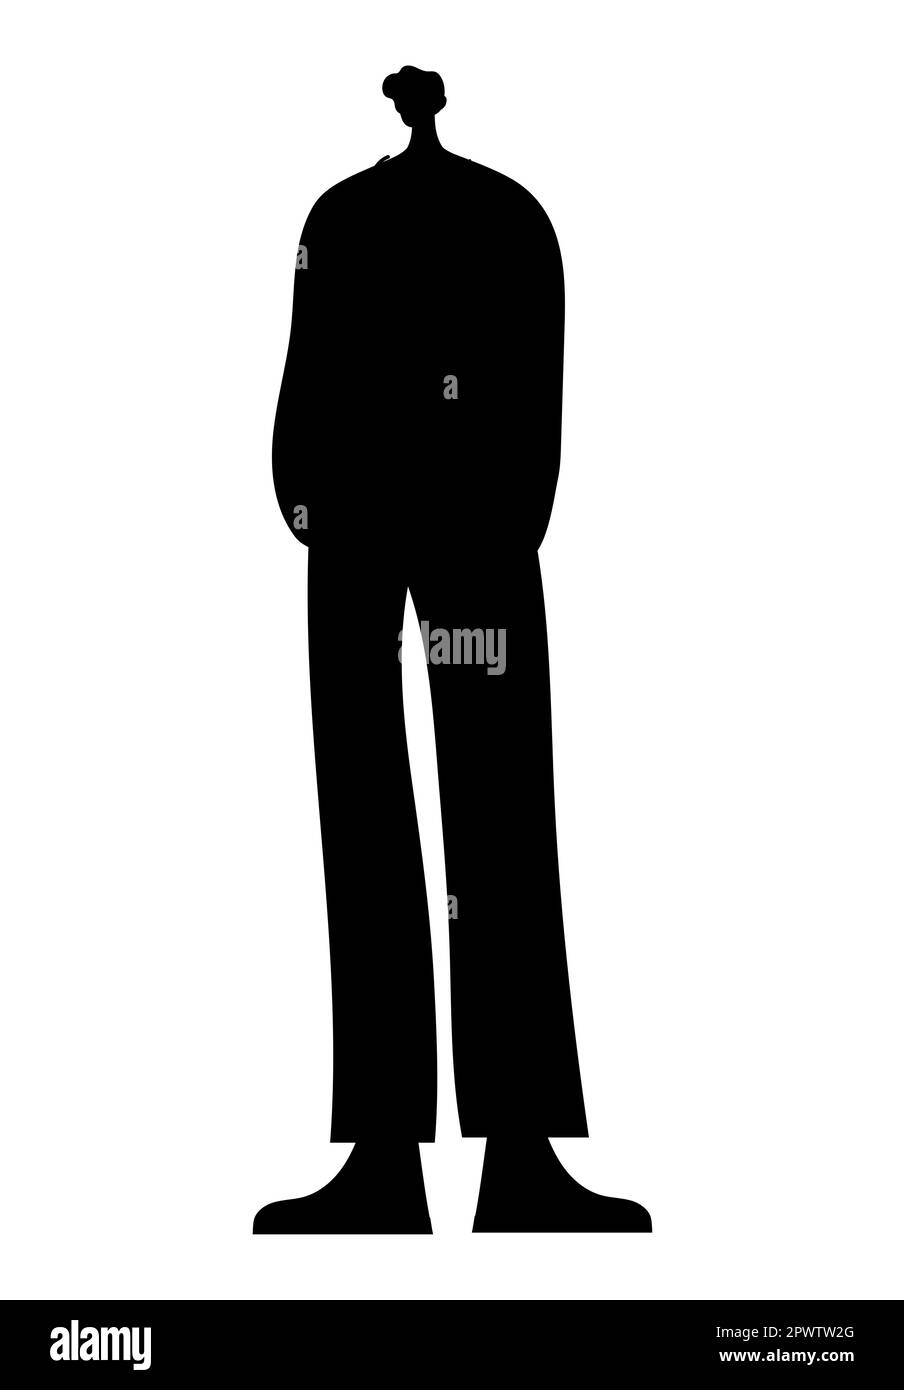 Silueta negra de un hombre de pie con las manos en los bolsillos, ilustración vectorial Ilustración del Vector